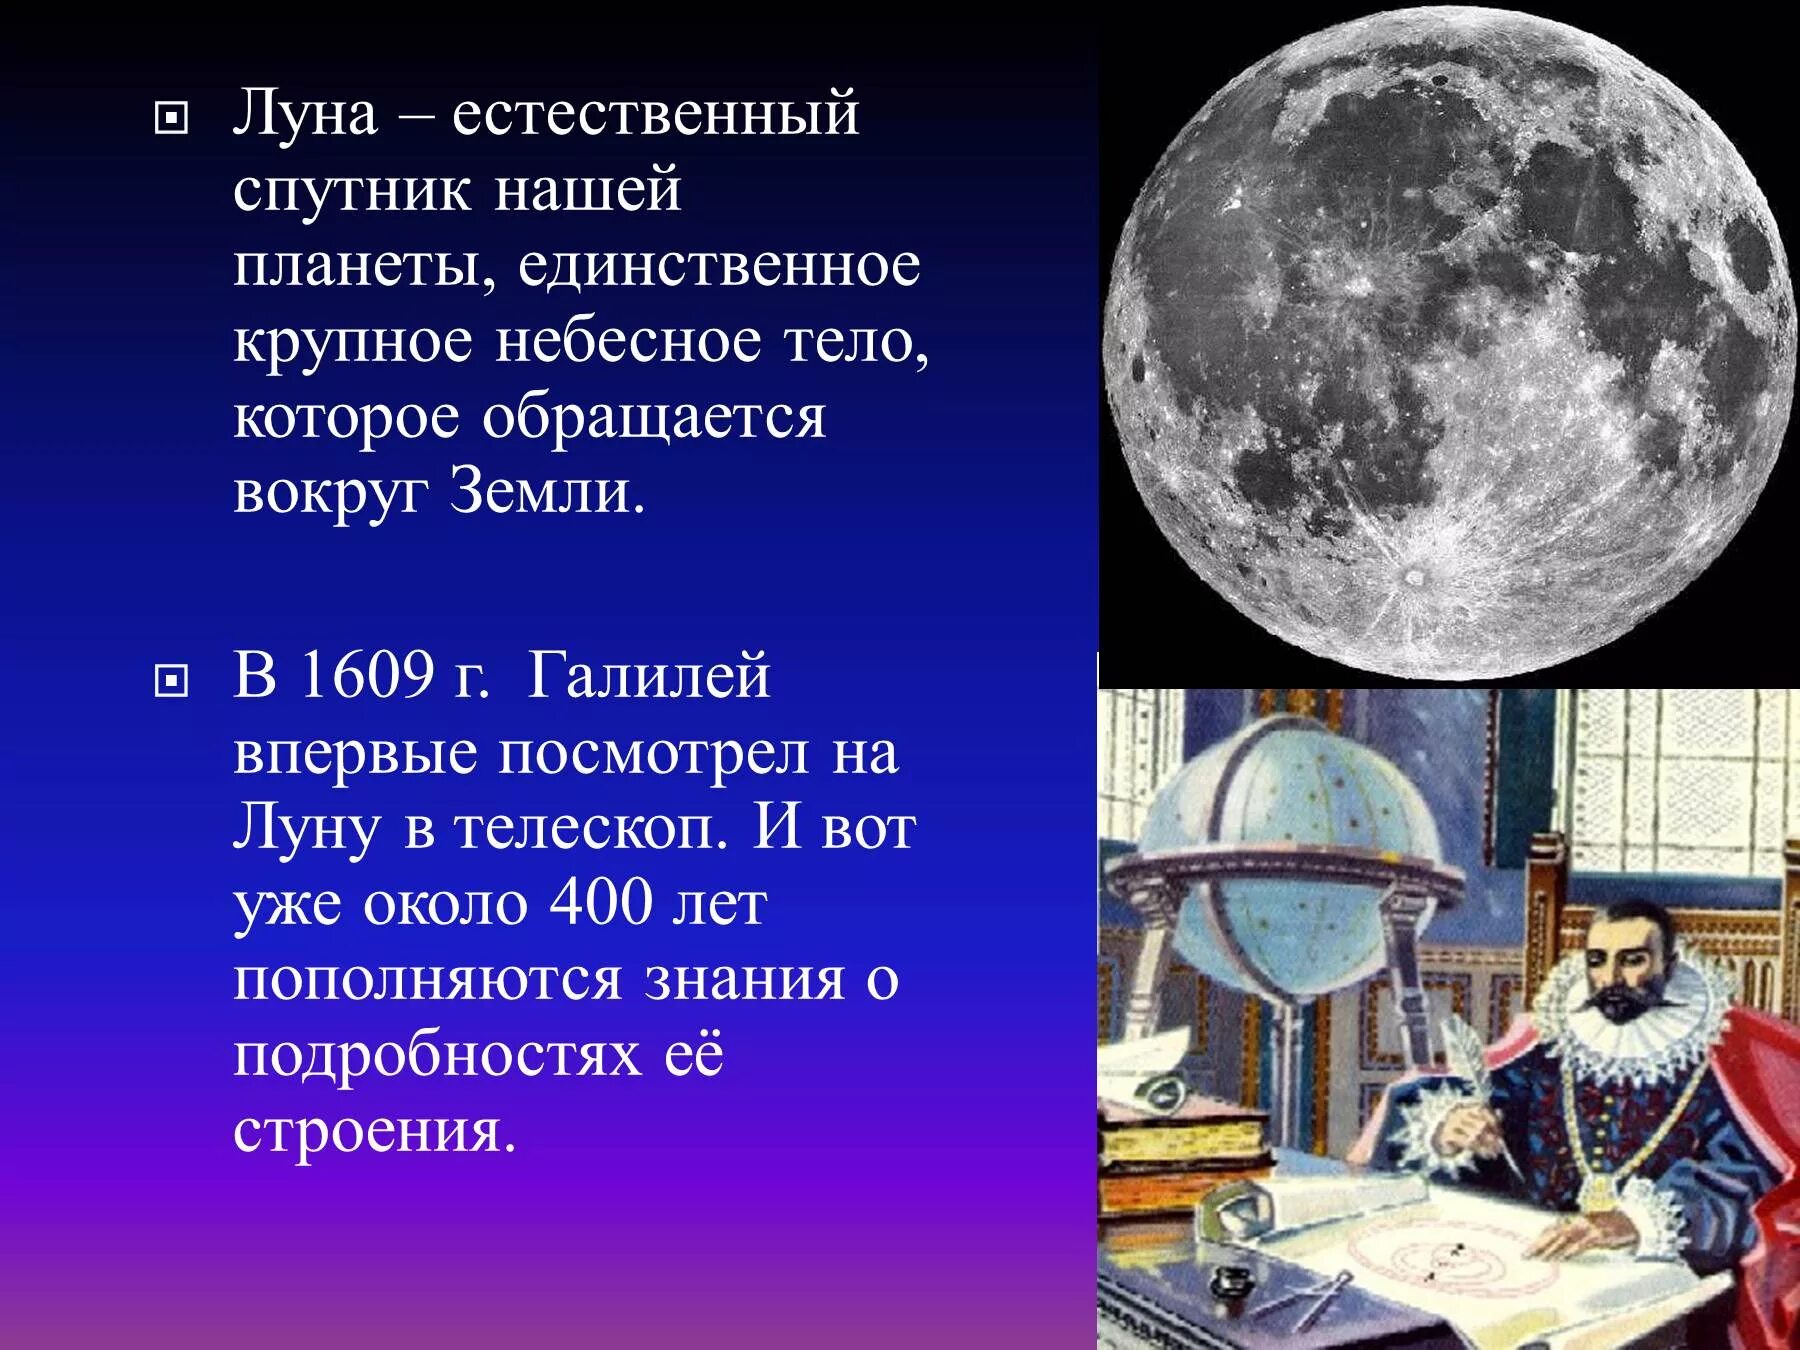 Луна естественный Спутник земли. Луна для презентации. Общие сведения о Луне. Луна единственный естественный Спутник нашей планеты. Луна является причиной